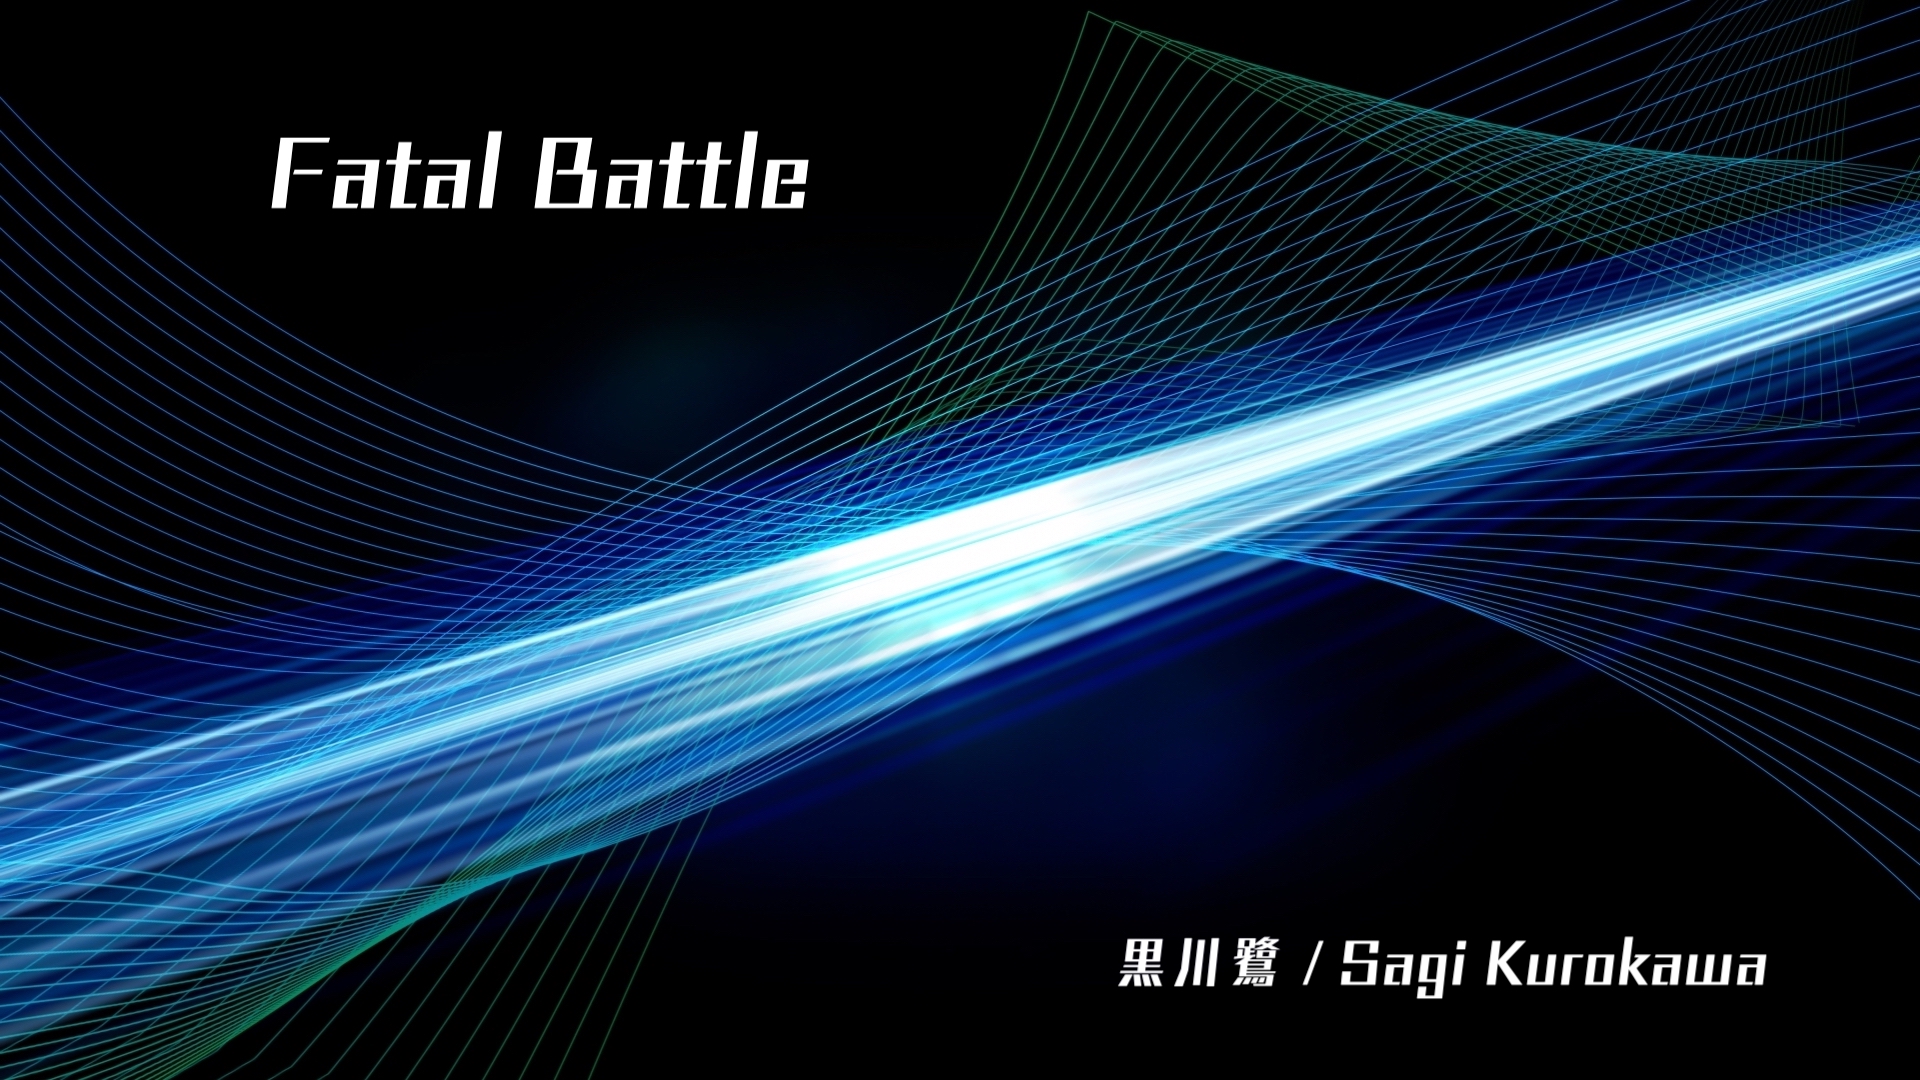 オリジナル曲 “Fatal Battle”